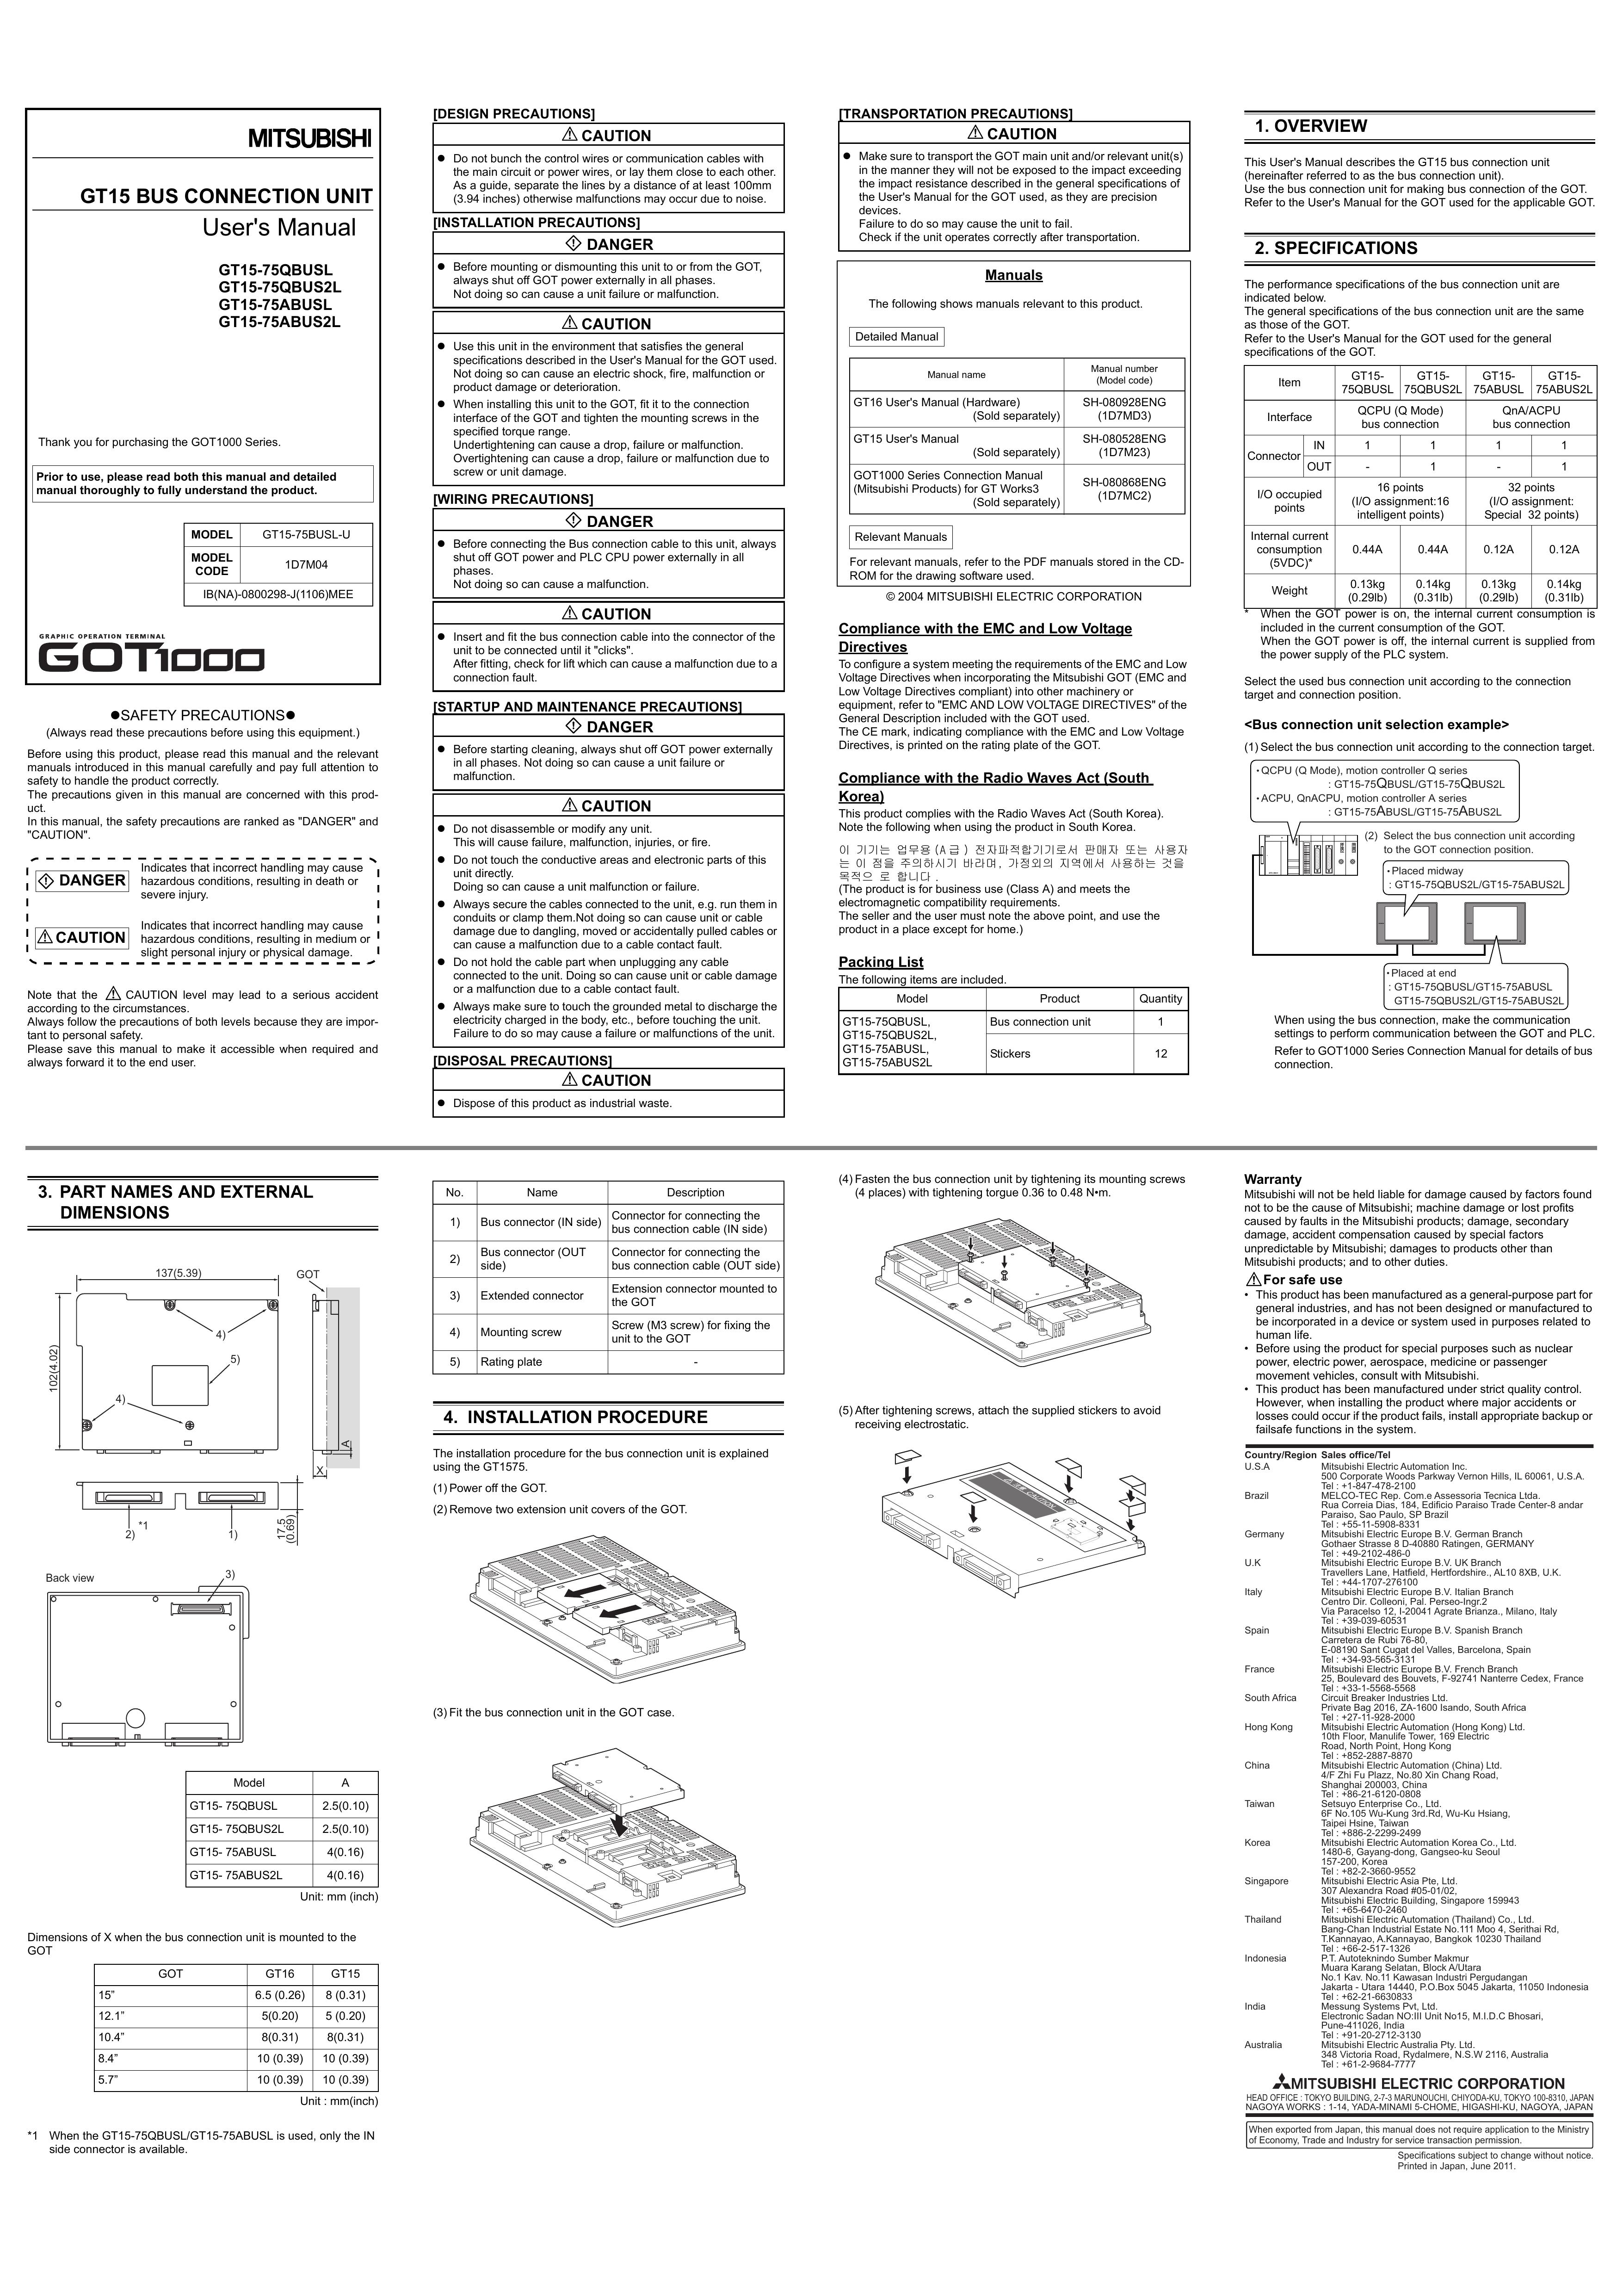 Mitsubishi Electronics GT15-75QBUS2L Insect Control Equipment User Manual